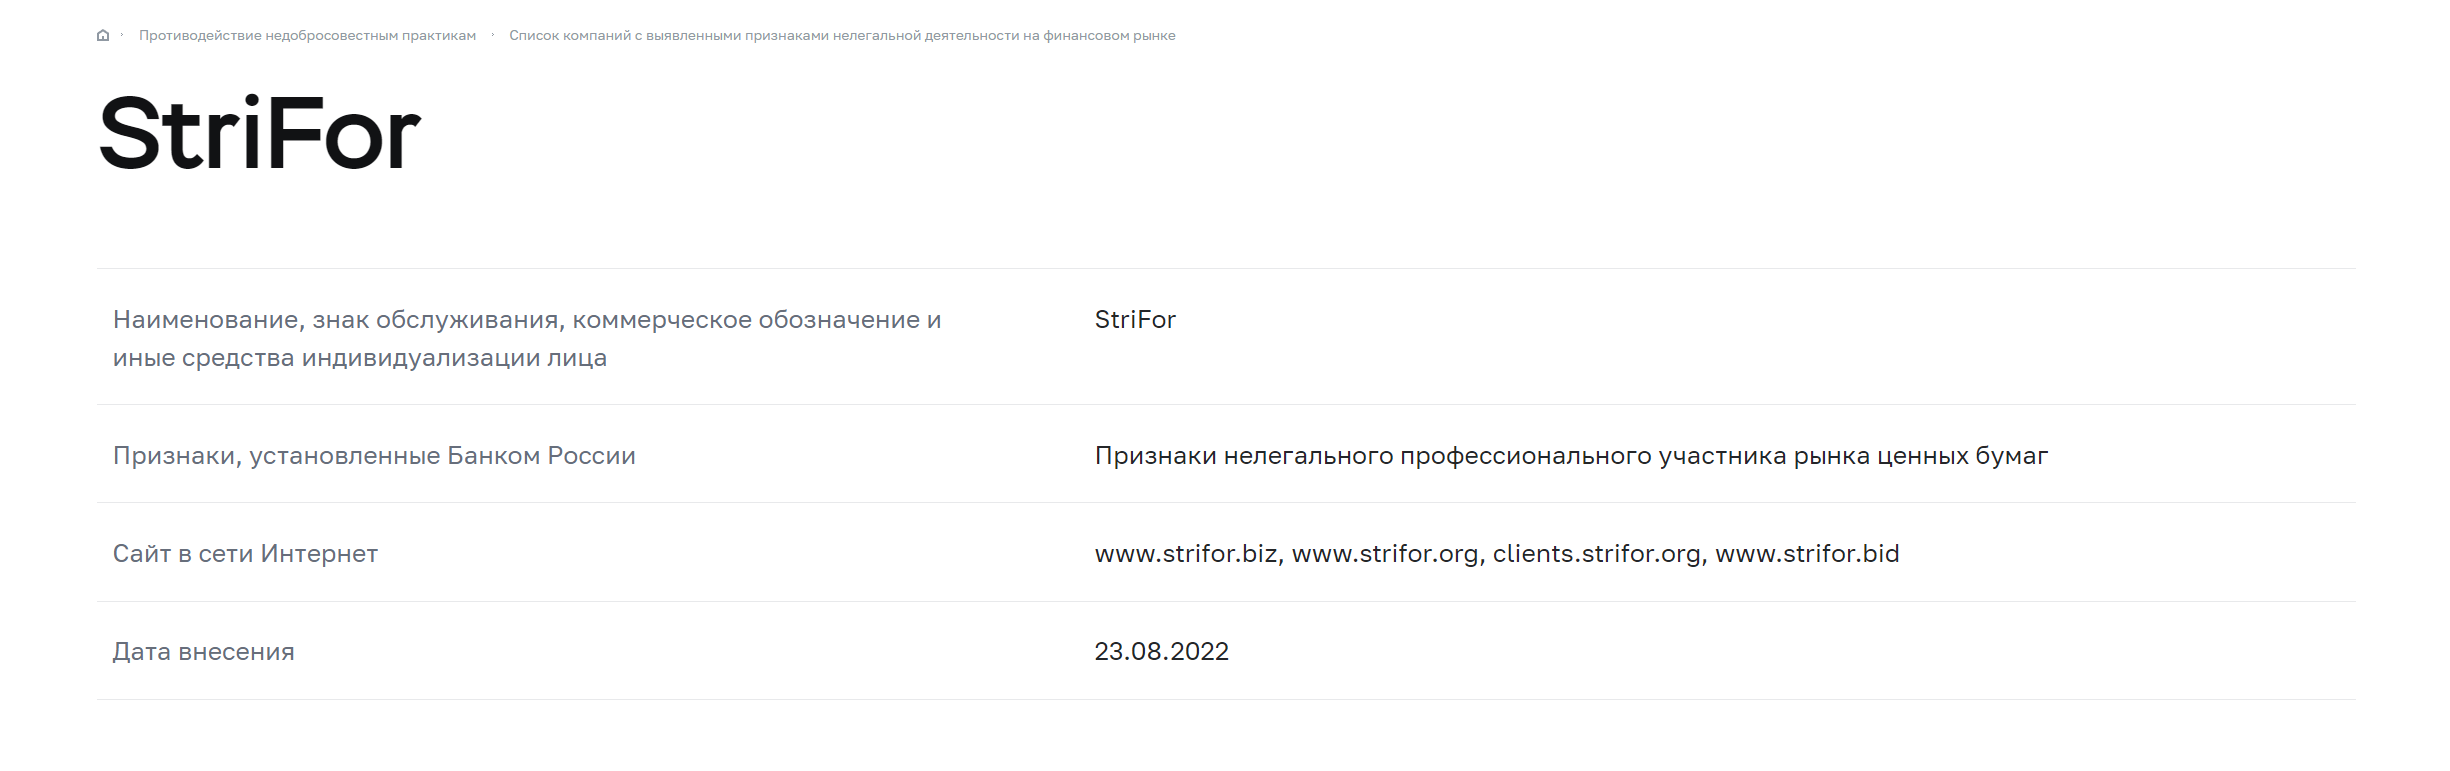 Информация о Strifor на сайте Банка России